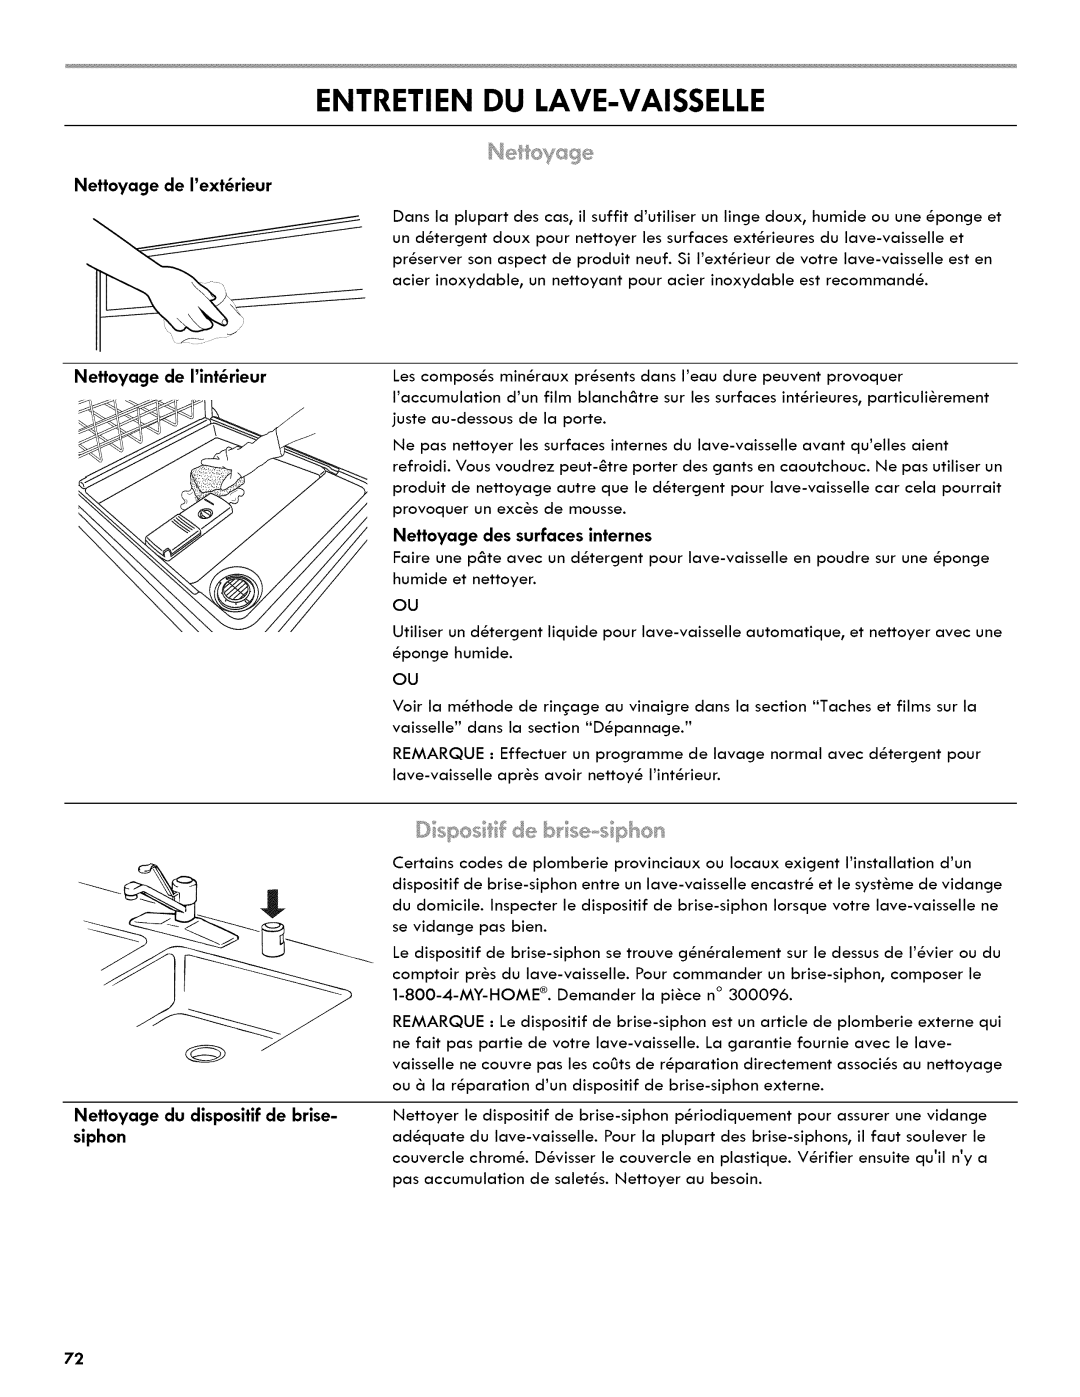 Kenmore 665.1404 manual Entretien Du Lave-Vaisselle, Nettoyage de lext_rieur, Nettoyage du dispositif de brise 